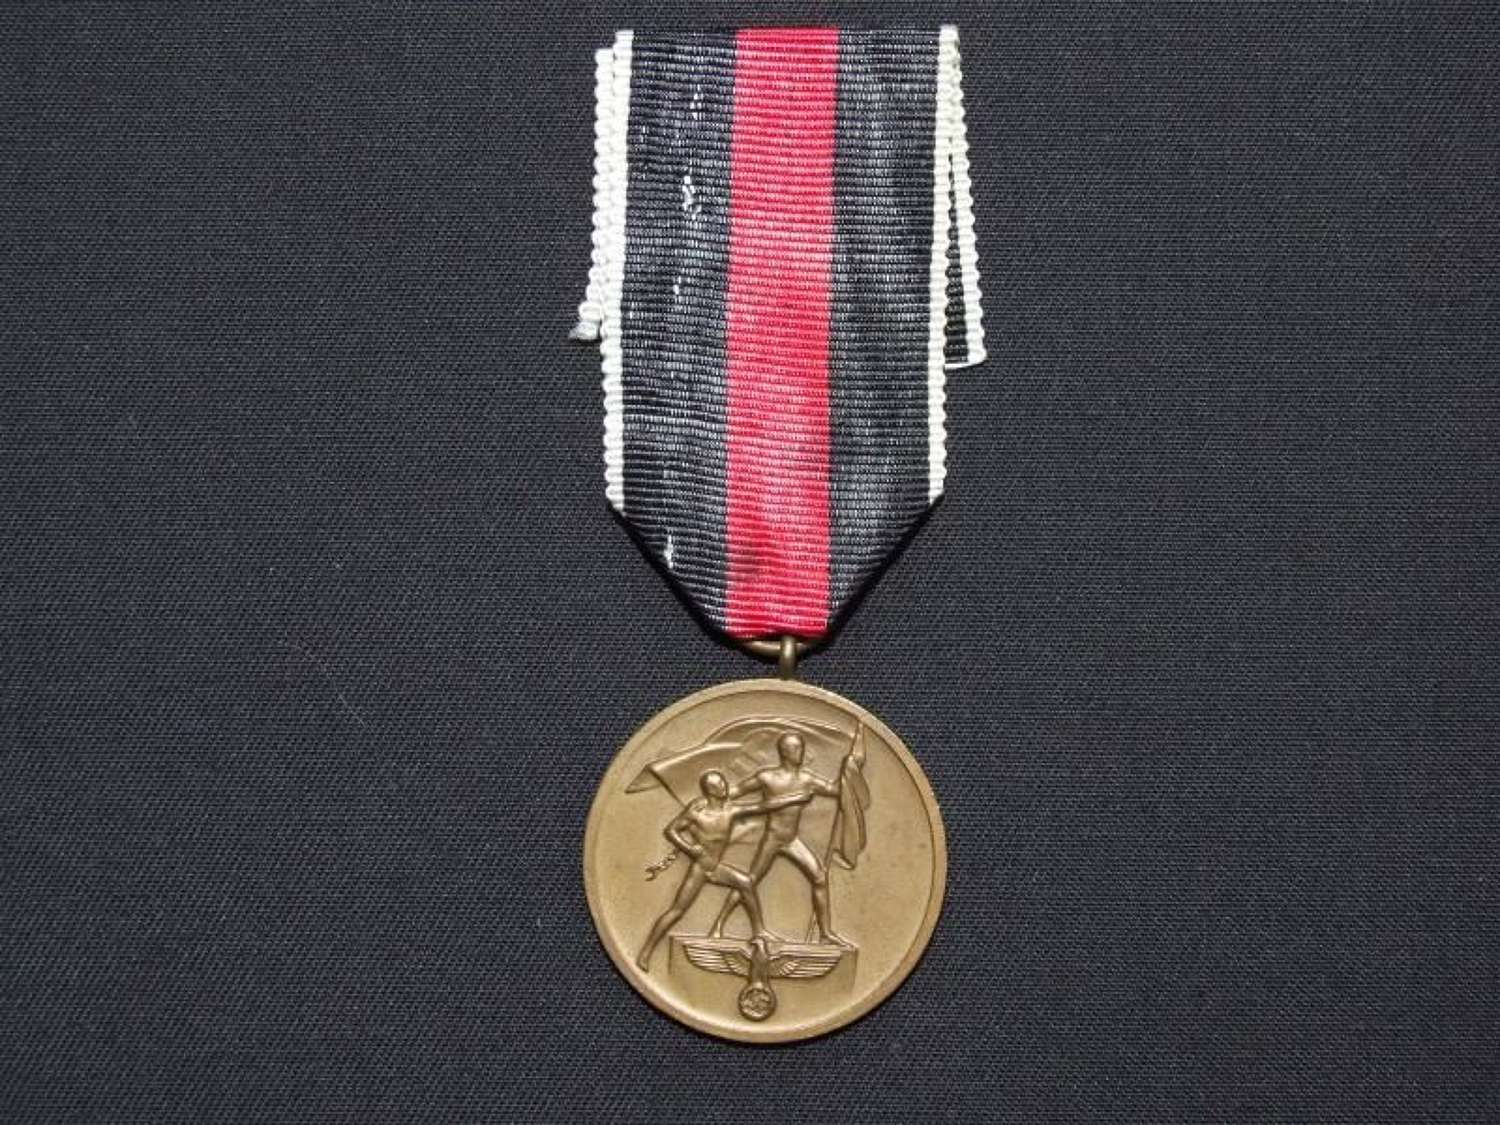 1938 Commemorative Sudetenland Medal